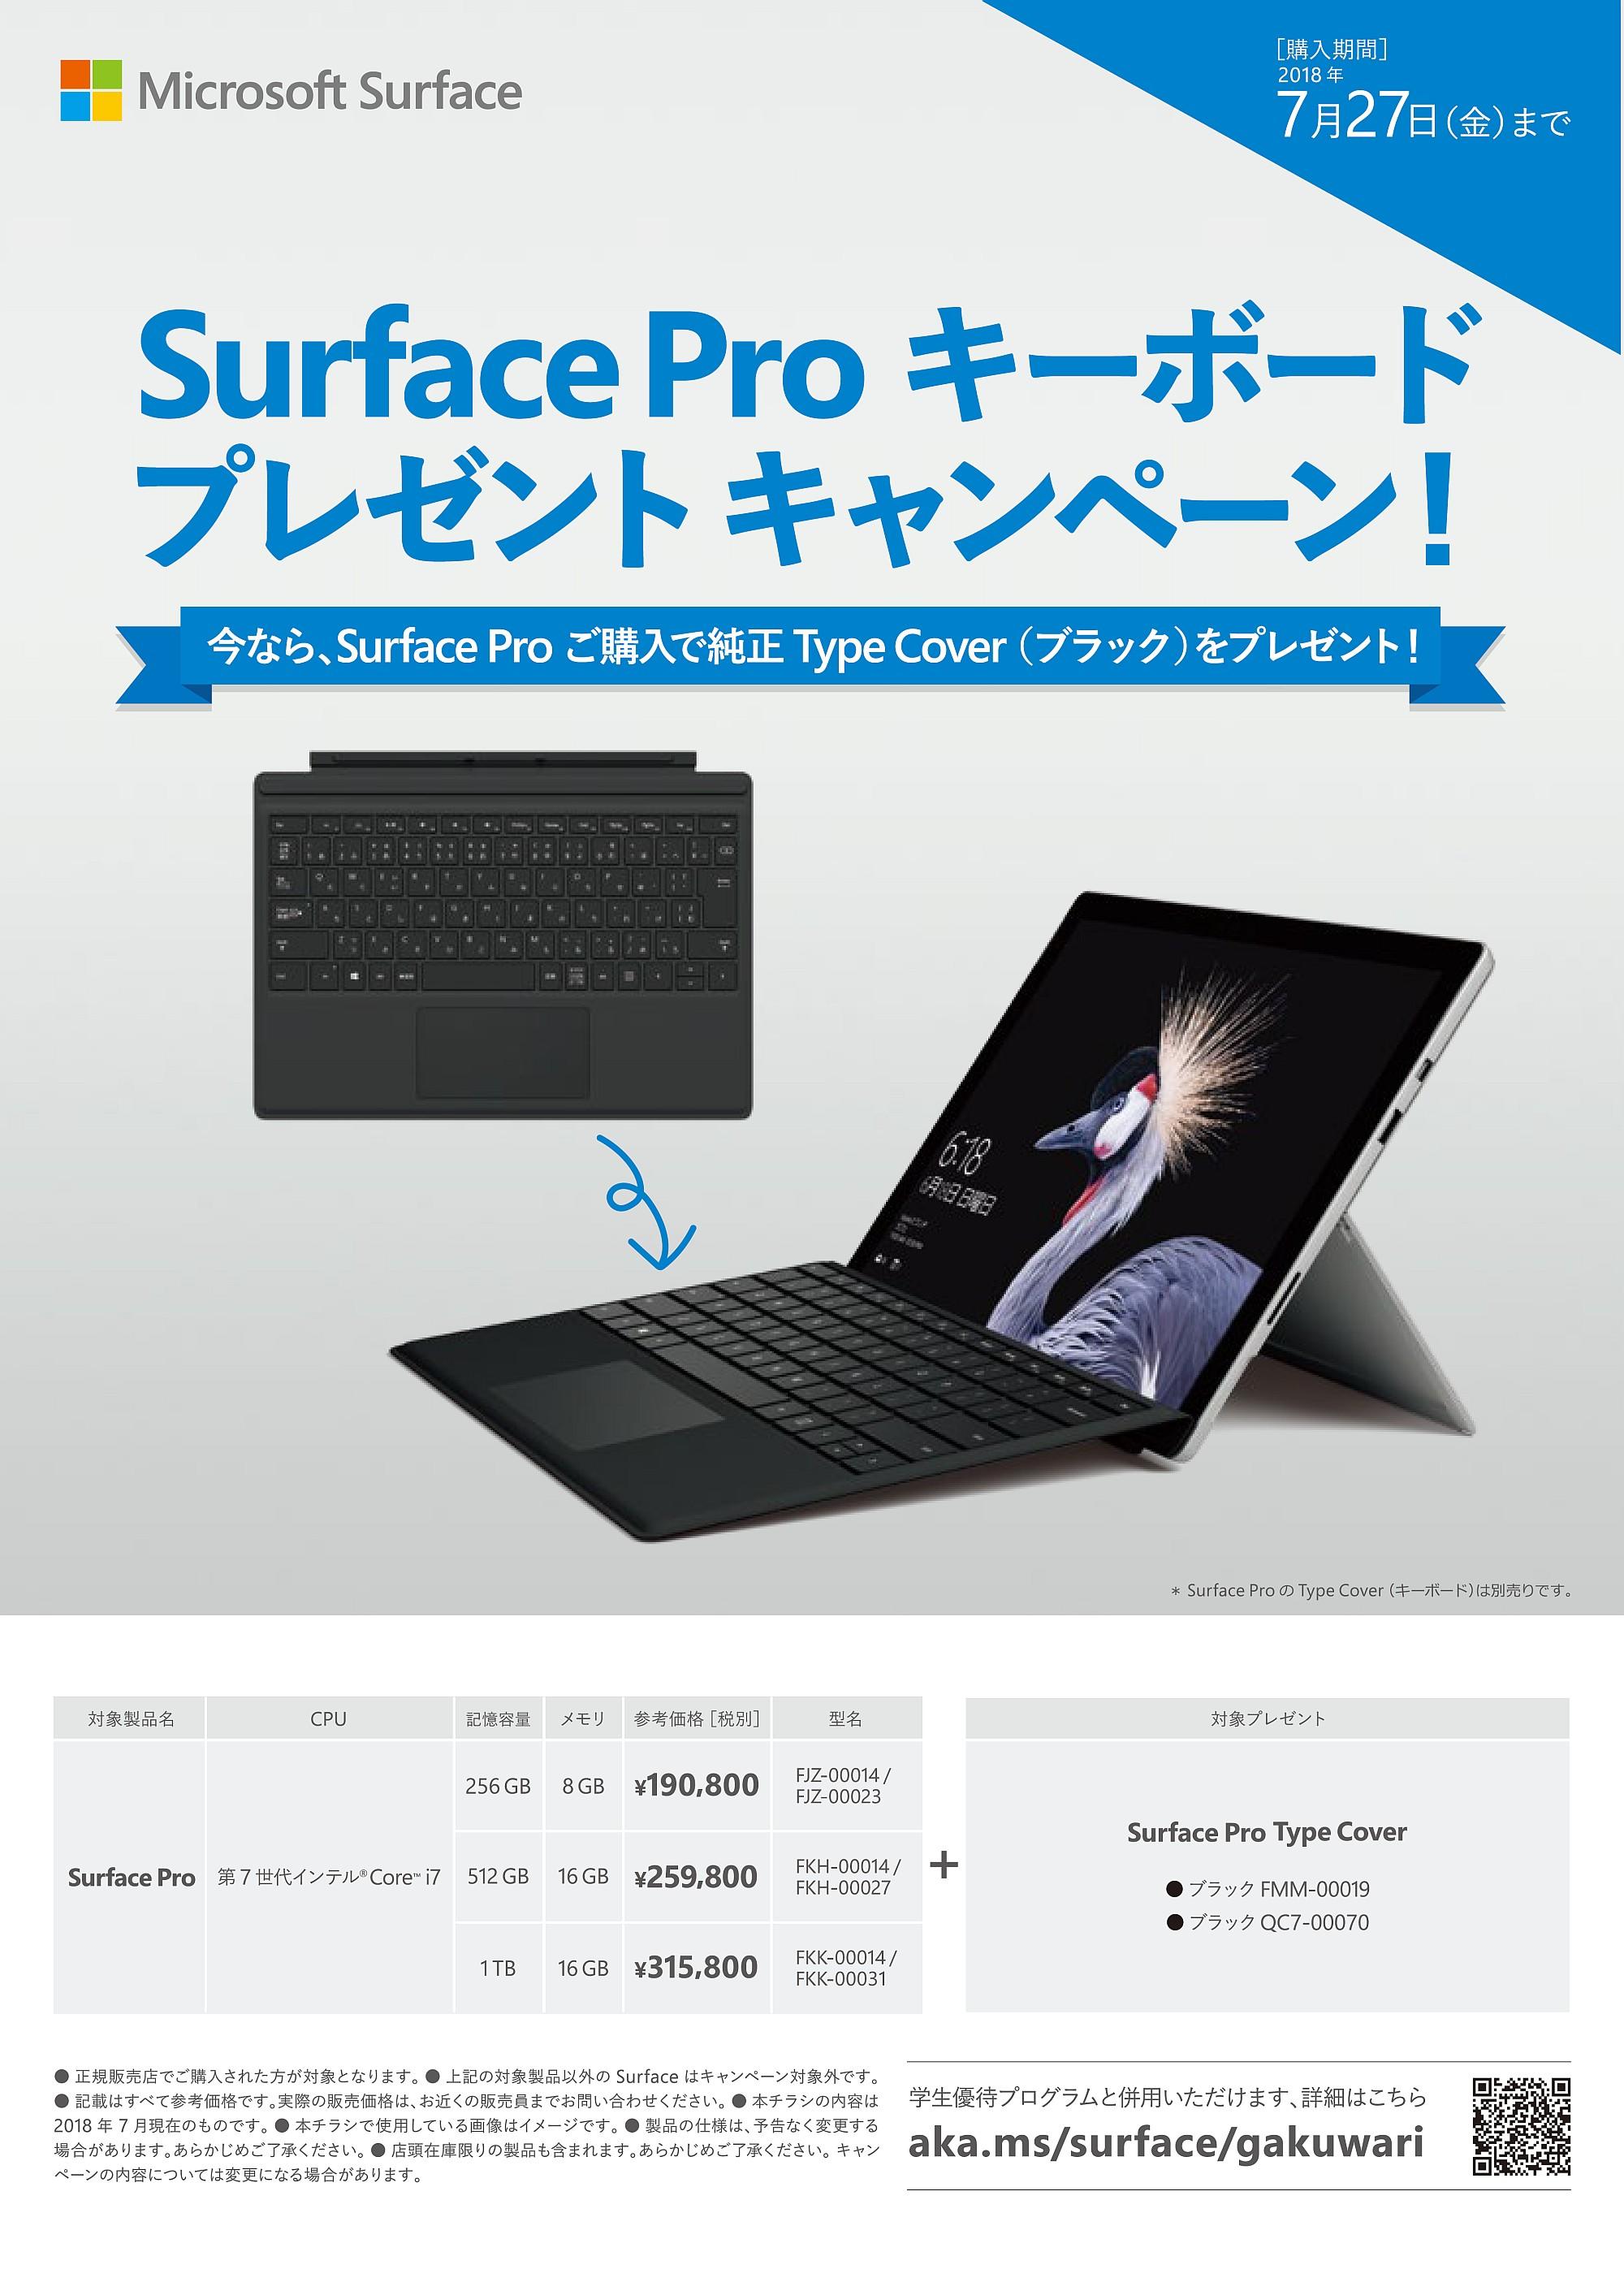 Surface Pro タイプカバー プレゼント キャンペーン開催中 7 27まで ツクモ新橋店 最新情報